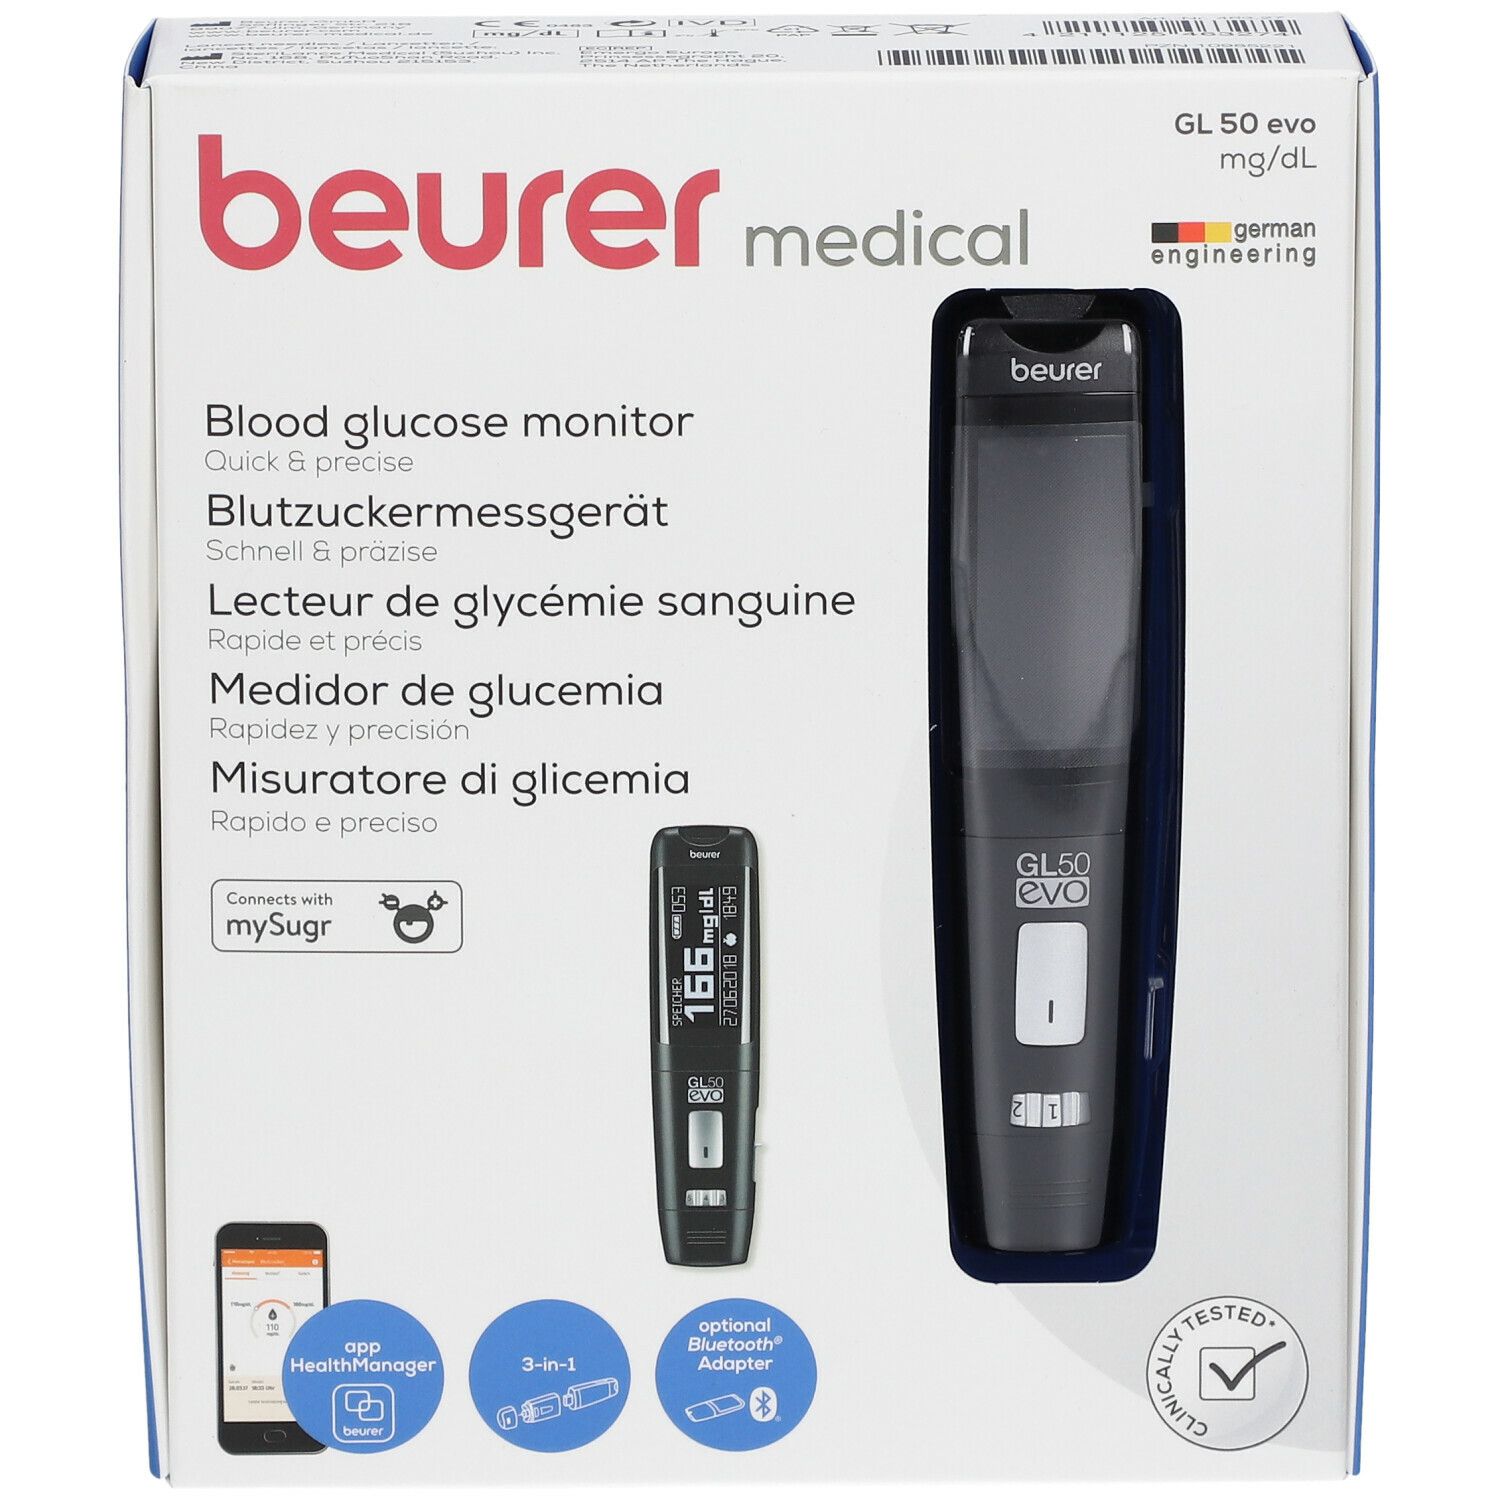 beurer - Blutzuckermessgerät GL 50 evo mg/dL